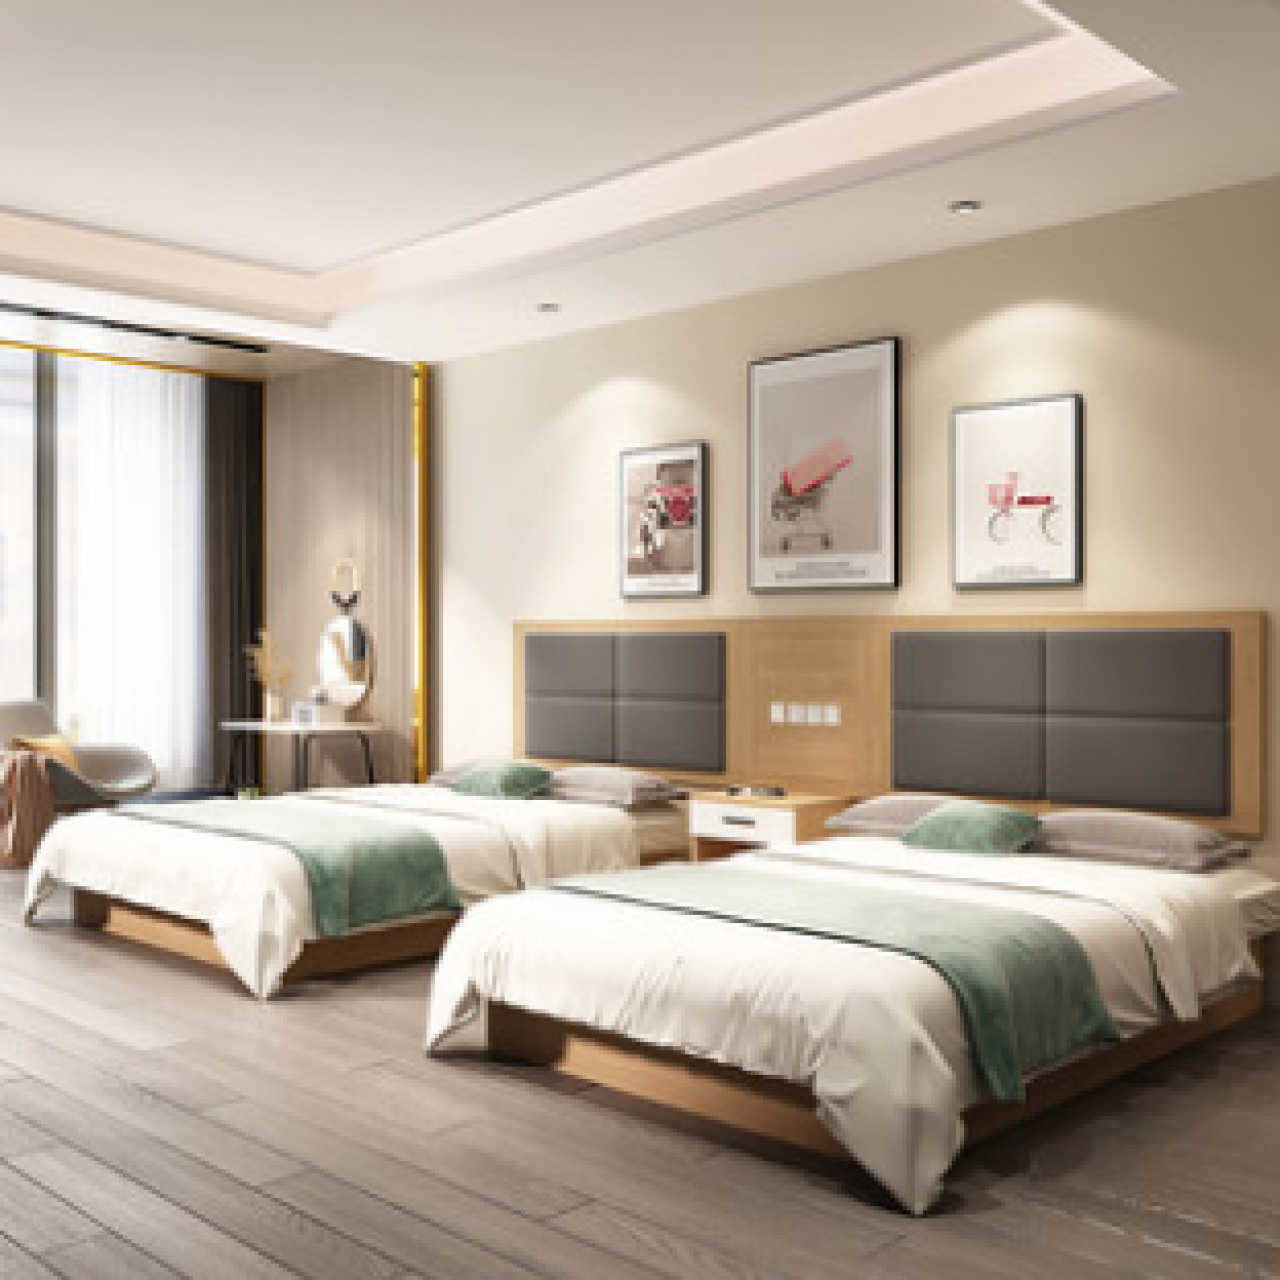 新中式酒店设计 - 效果图交流区-建E室内设计网